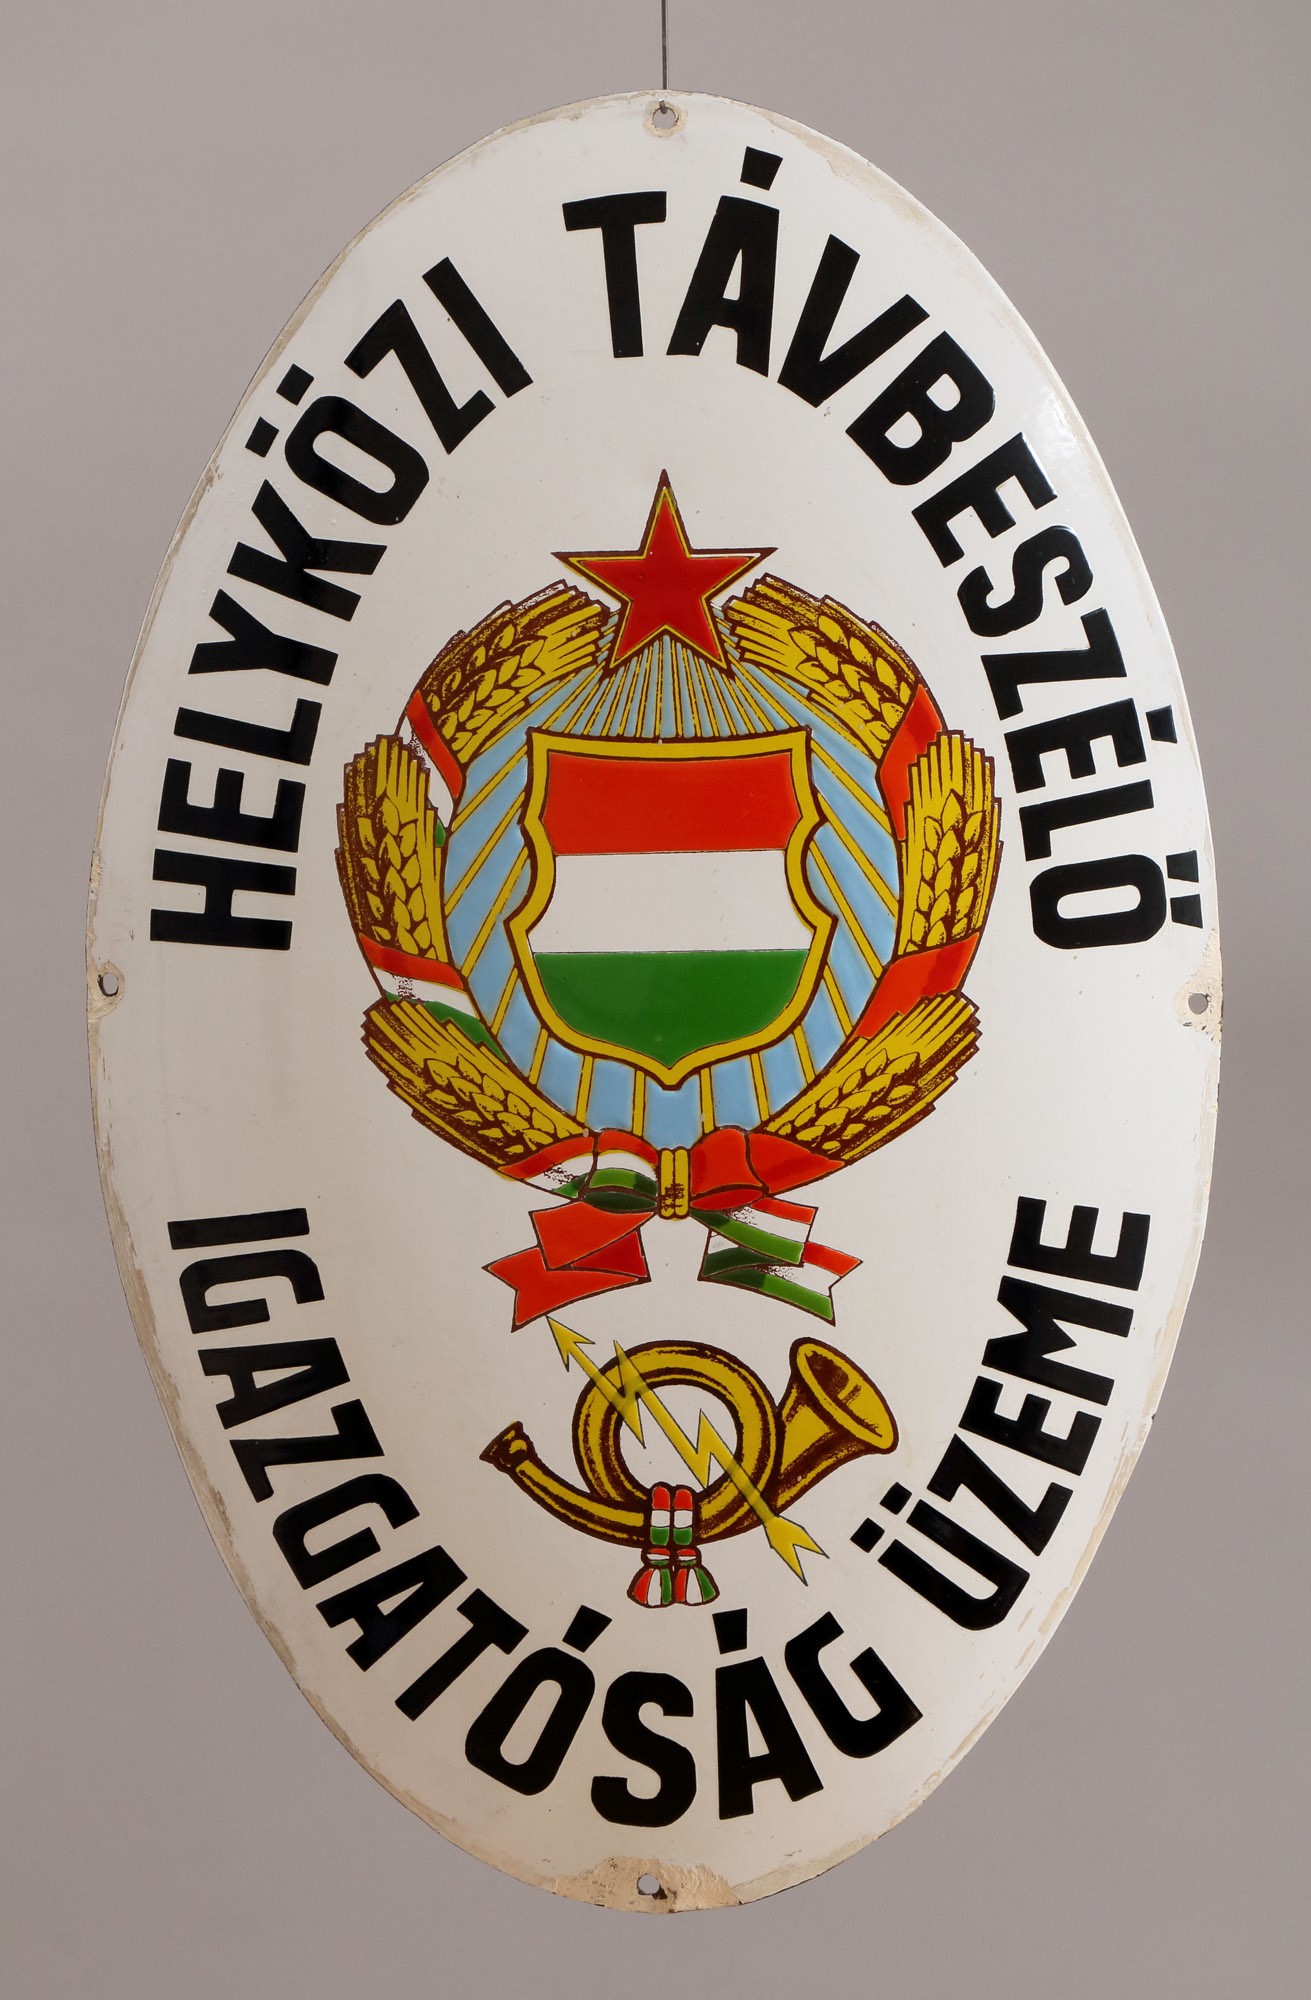 Címertábla "HELYKÖZI TÁVBESZÉLŐ IGAZGATÓSÁG ÜZEME" (Postamúzeum CC BY-NC-SA)